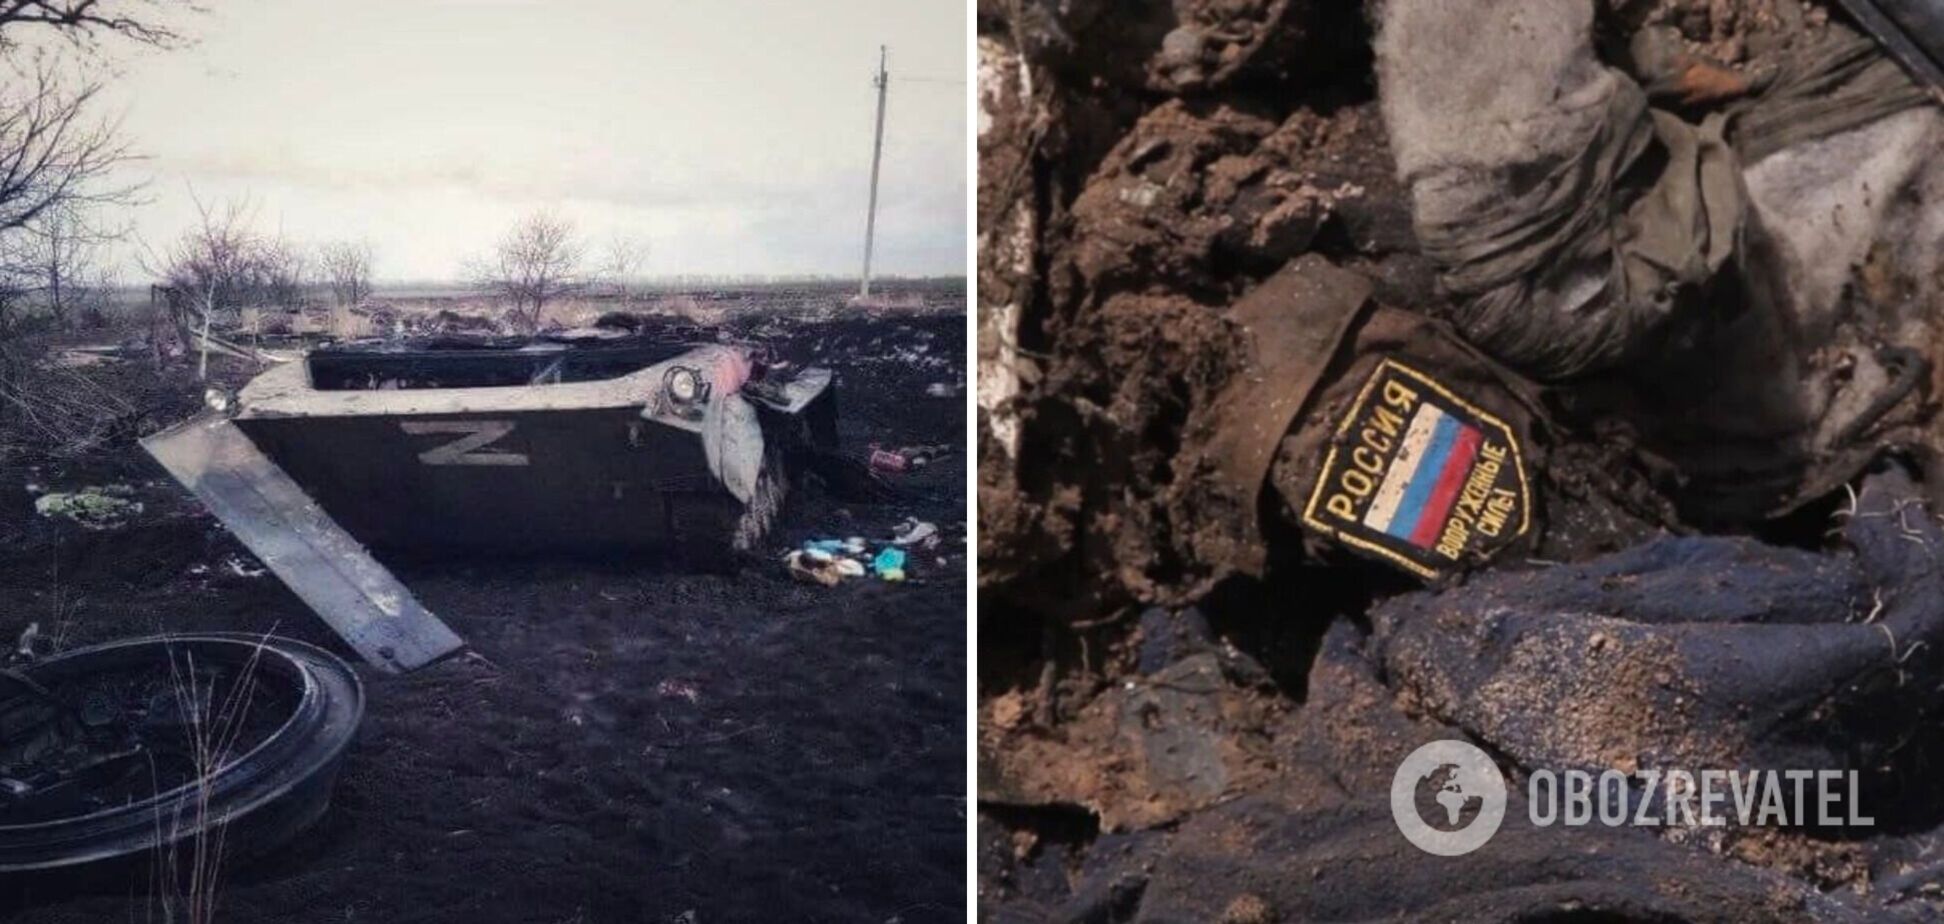 'Мы ближе, чем вы думаете': украинские разведчики уничтожили танк в тылу врага. Видео